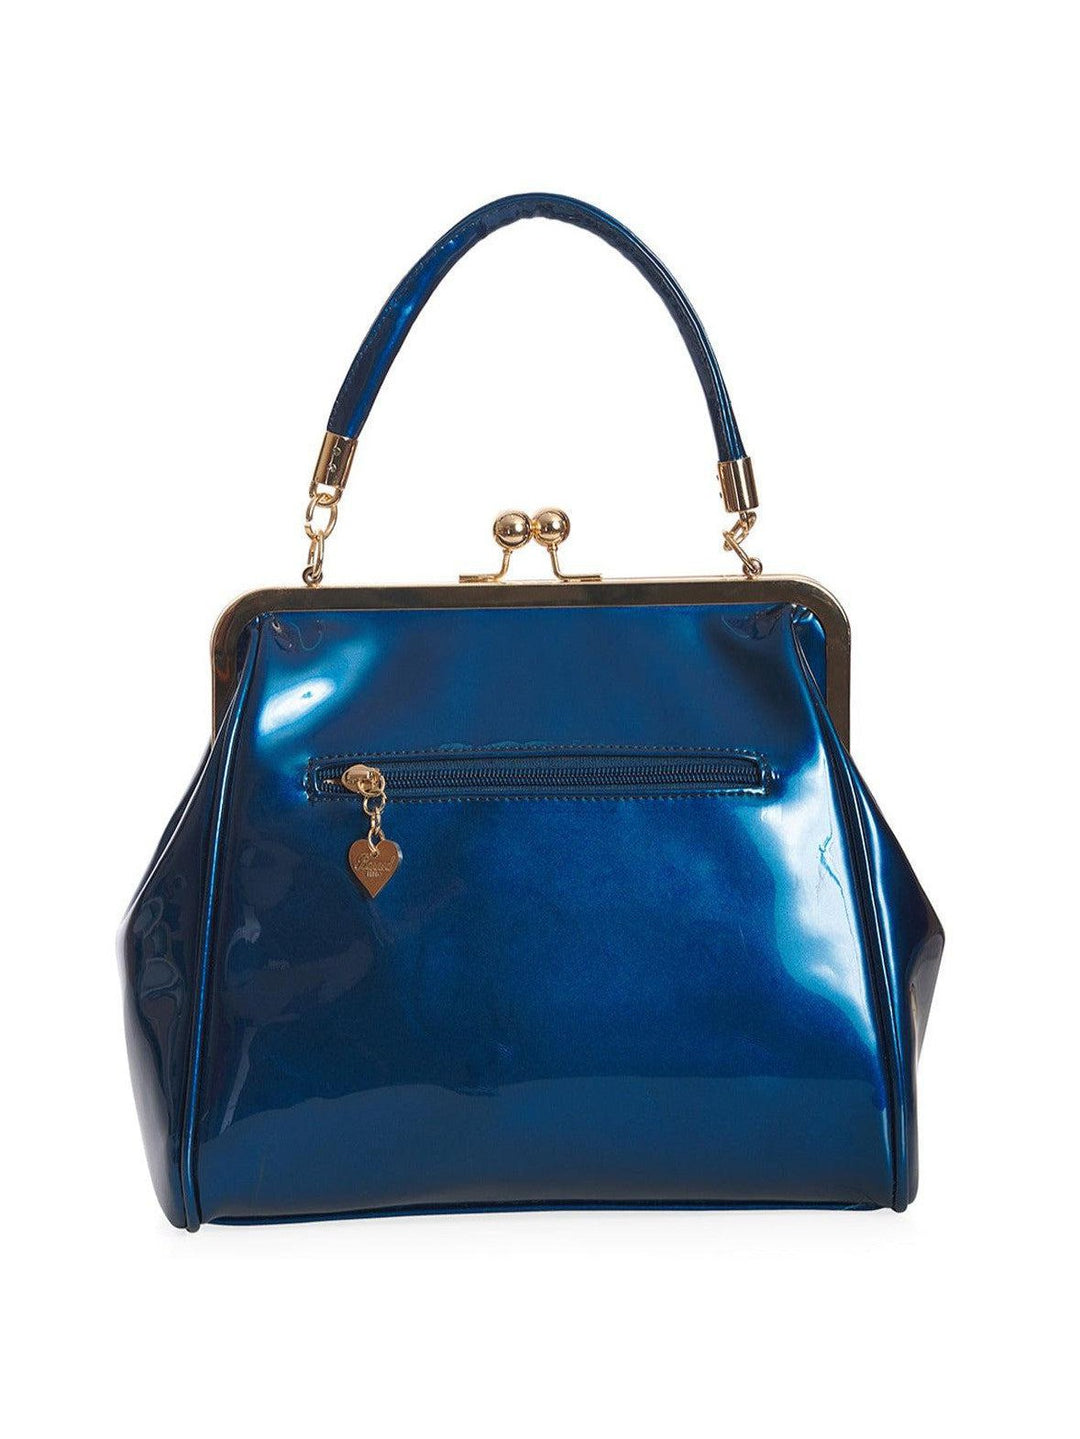 American Vintage Bag Teal Blue